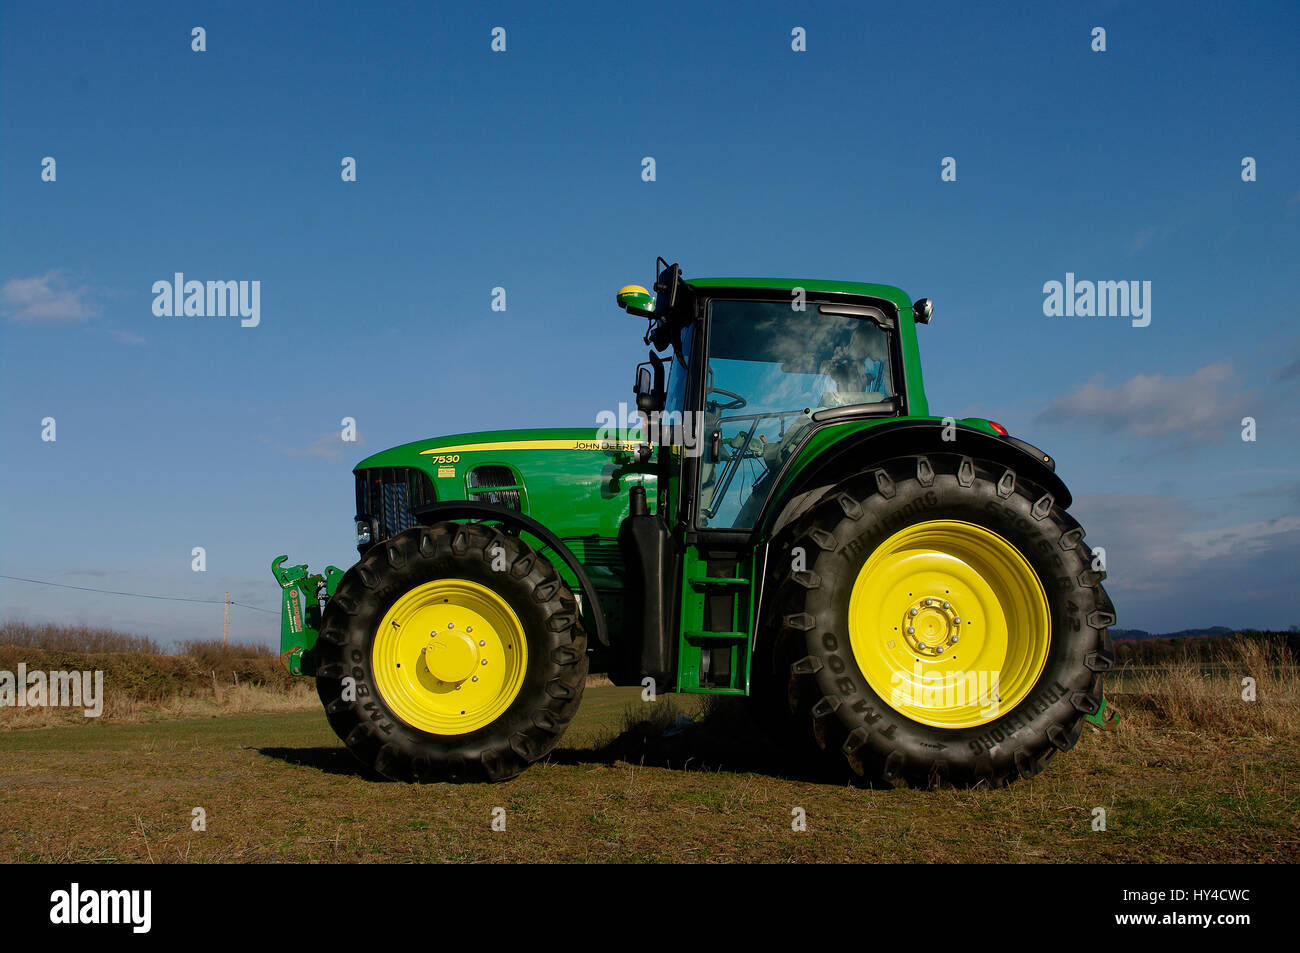 John Deere 7530 tractor Stock Photo